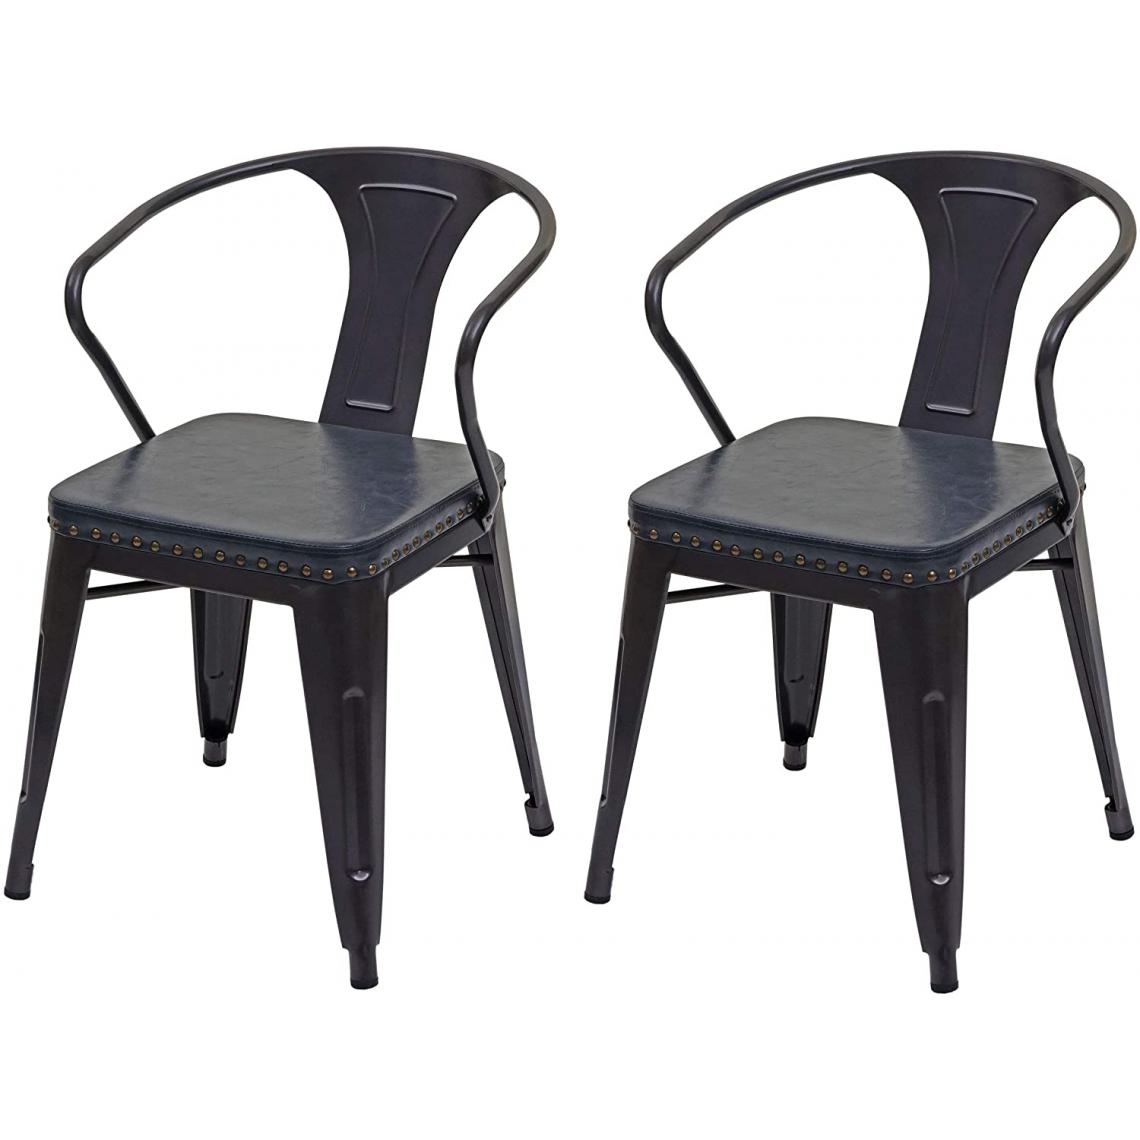 Decoshop26 - 2x chaises de salle à manger cuisine en simili cuir et métal style industrielle gris noir CDS04452 - Chaises